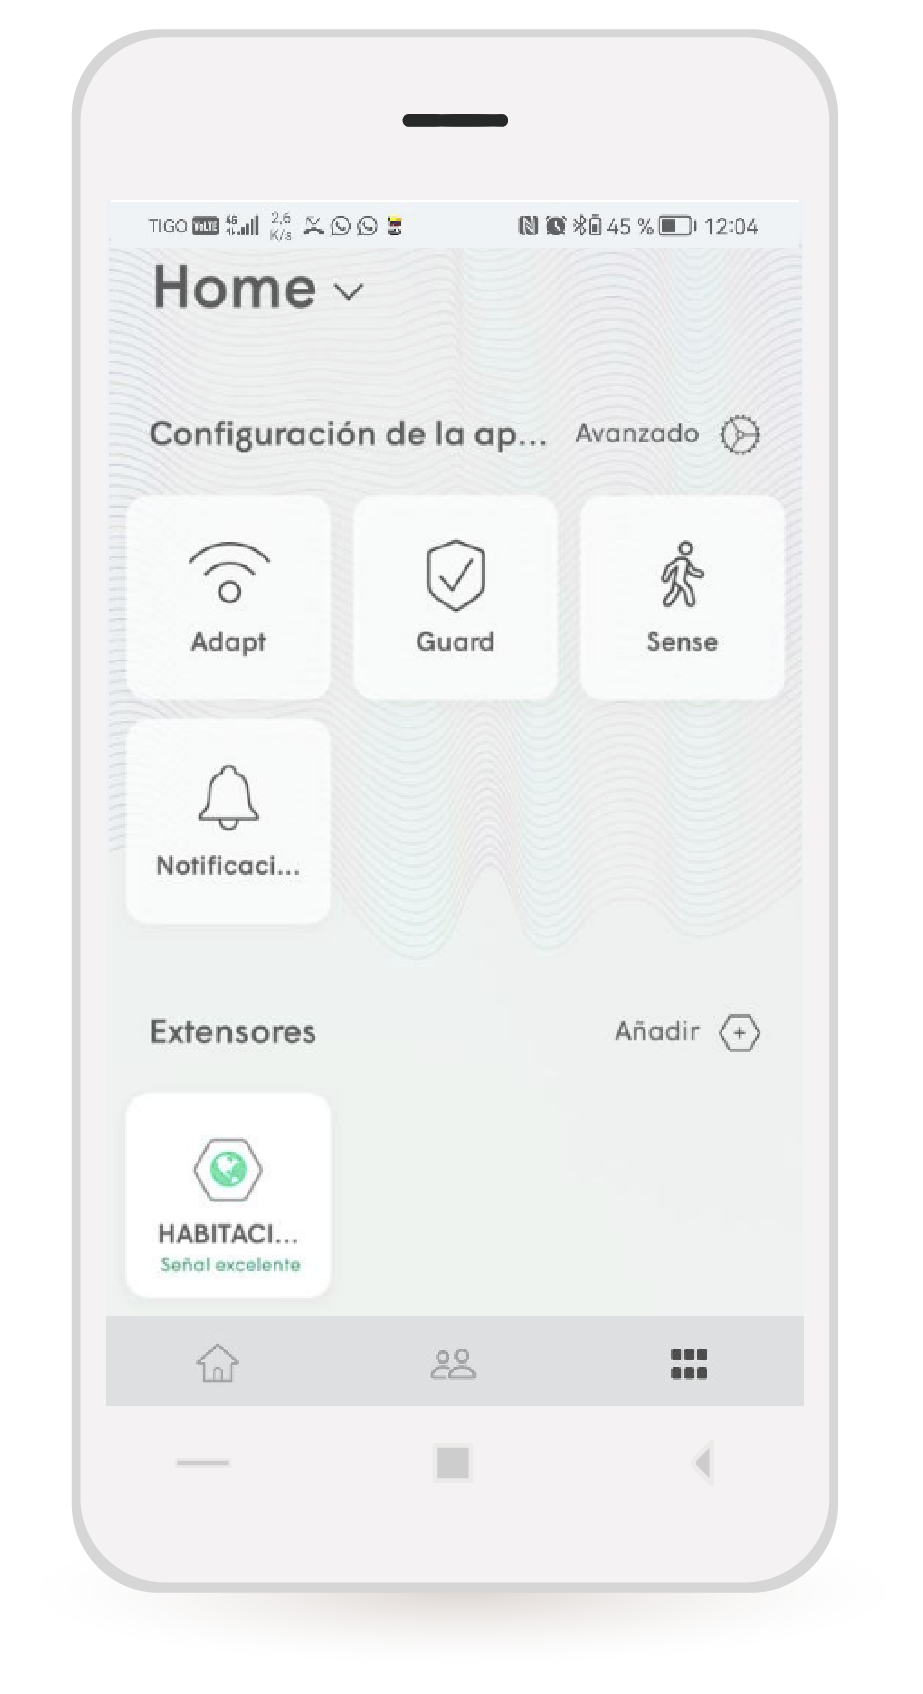 aw-paso a paso wifi tigo app